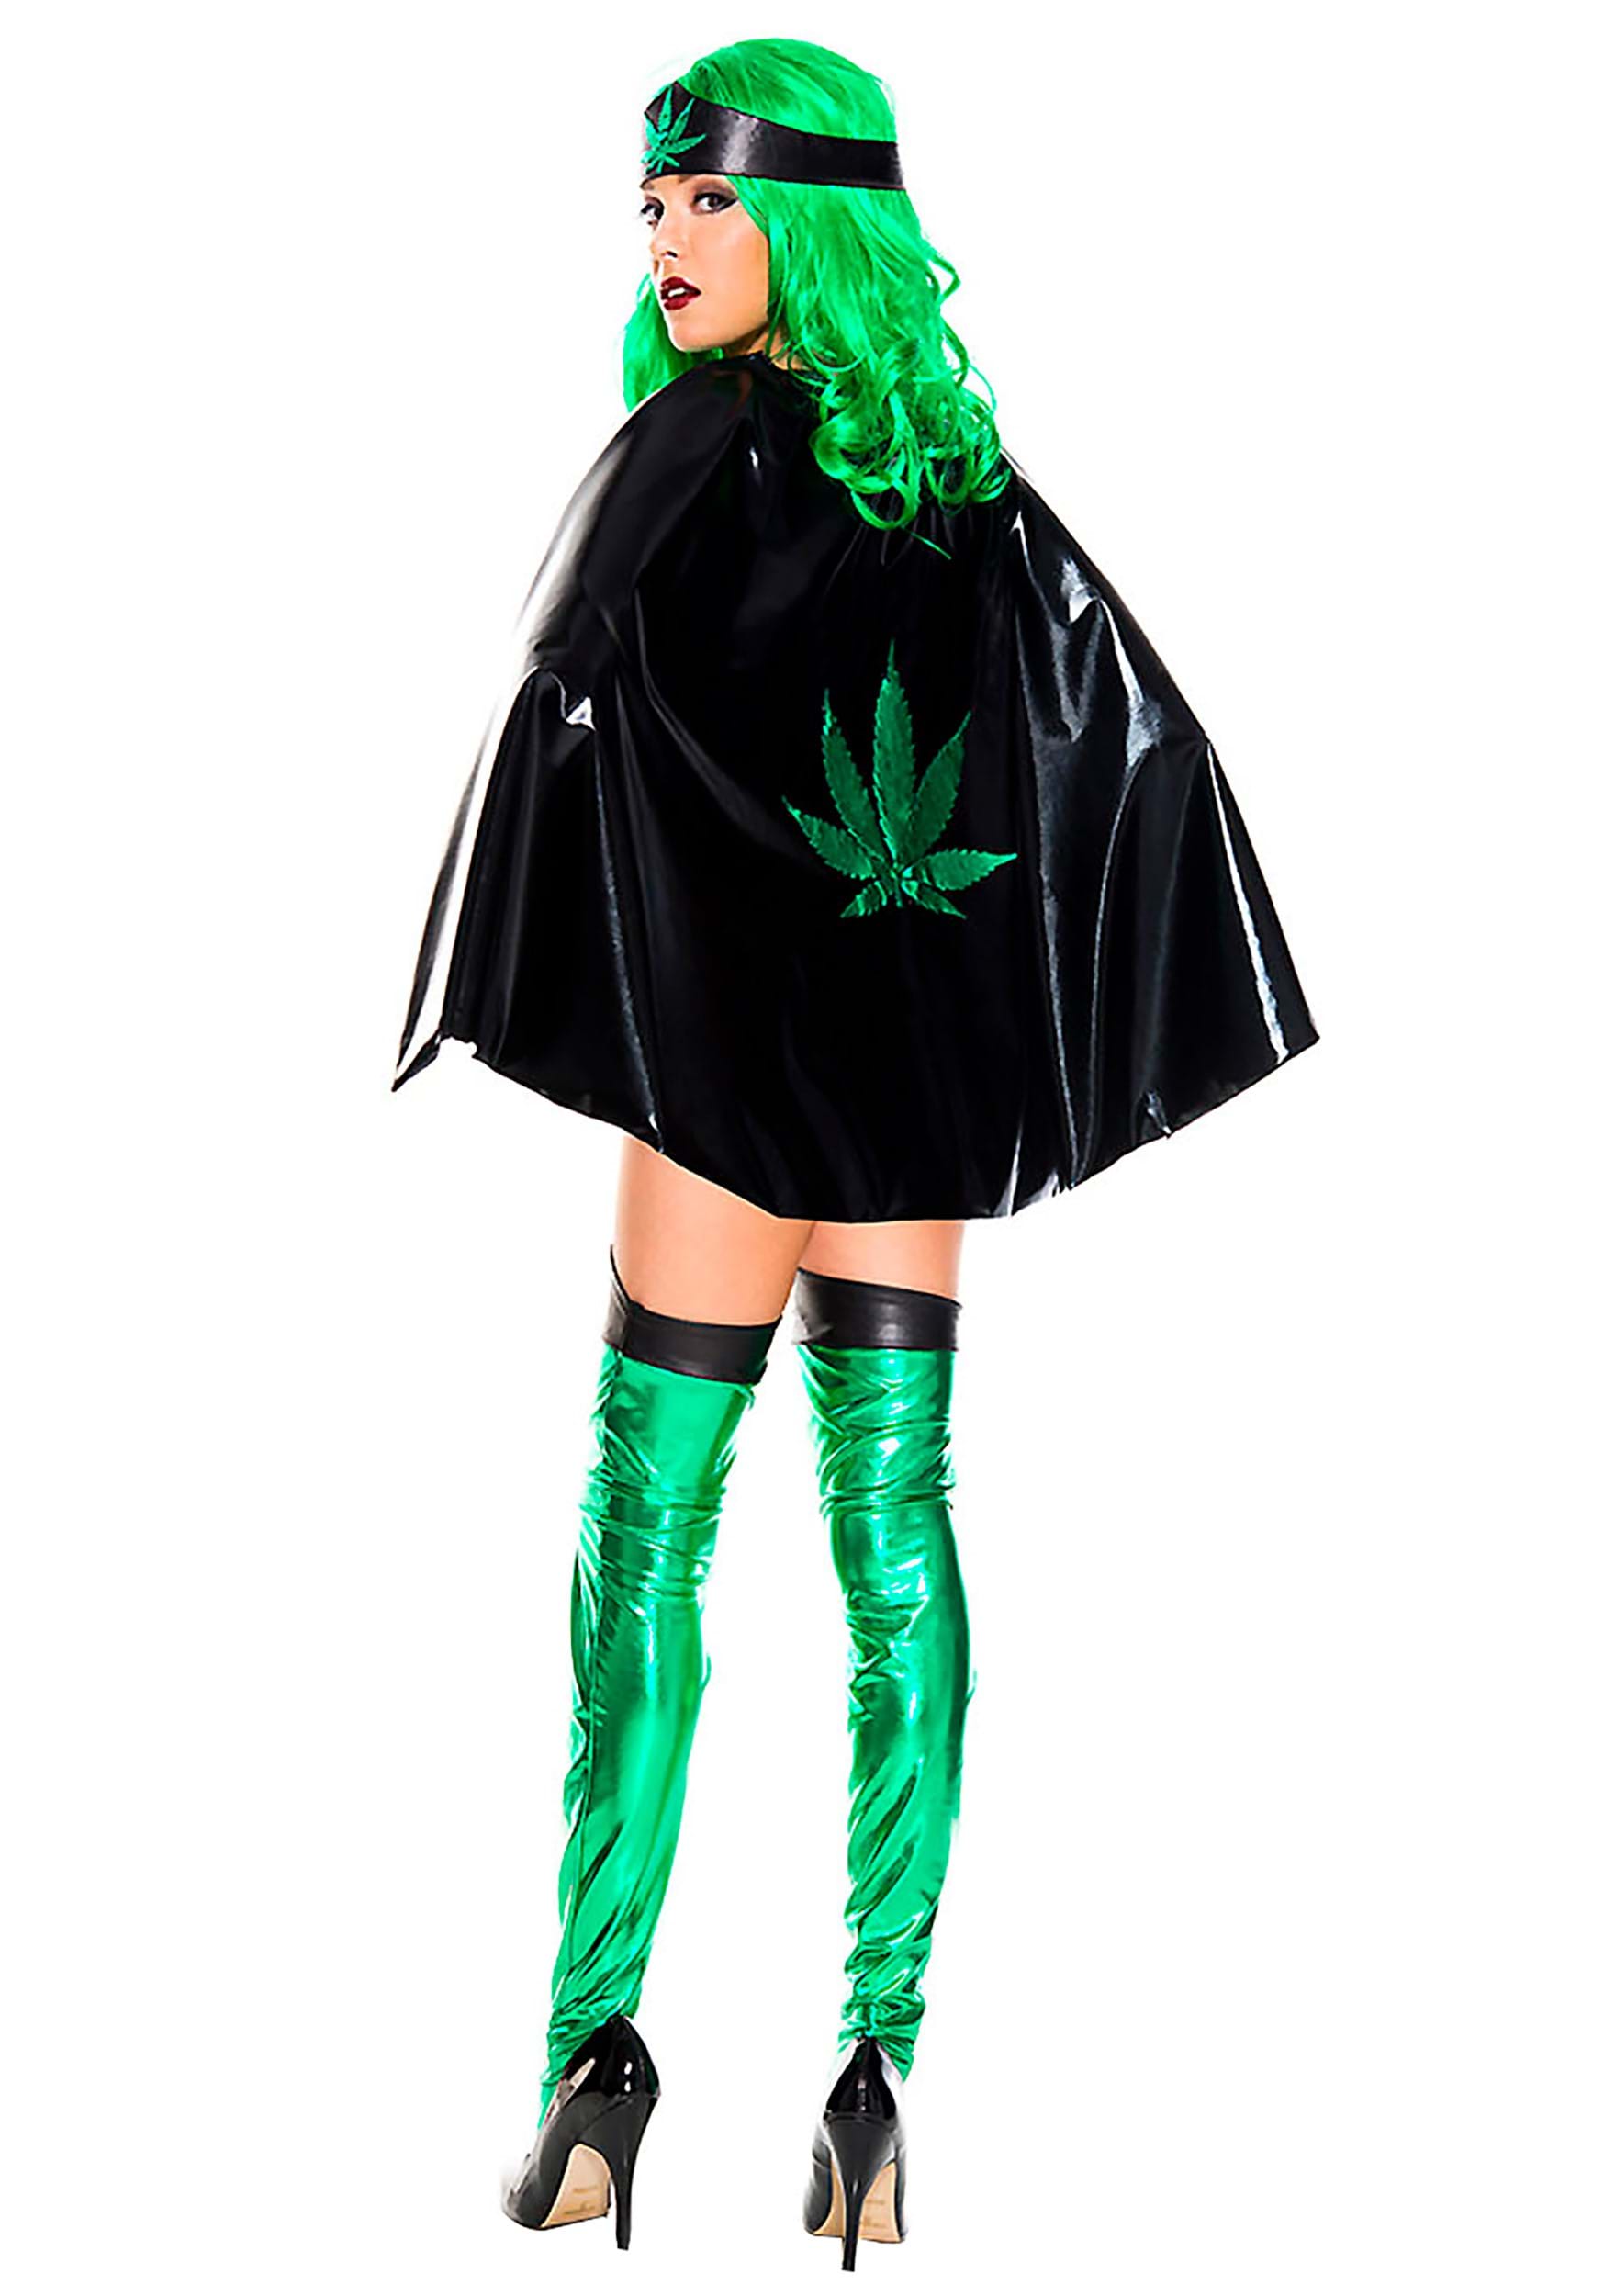 Leafy Super Woman Women's Costume